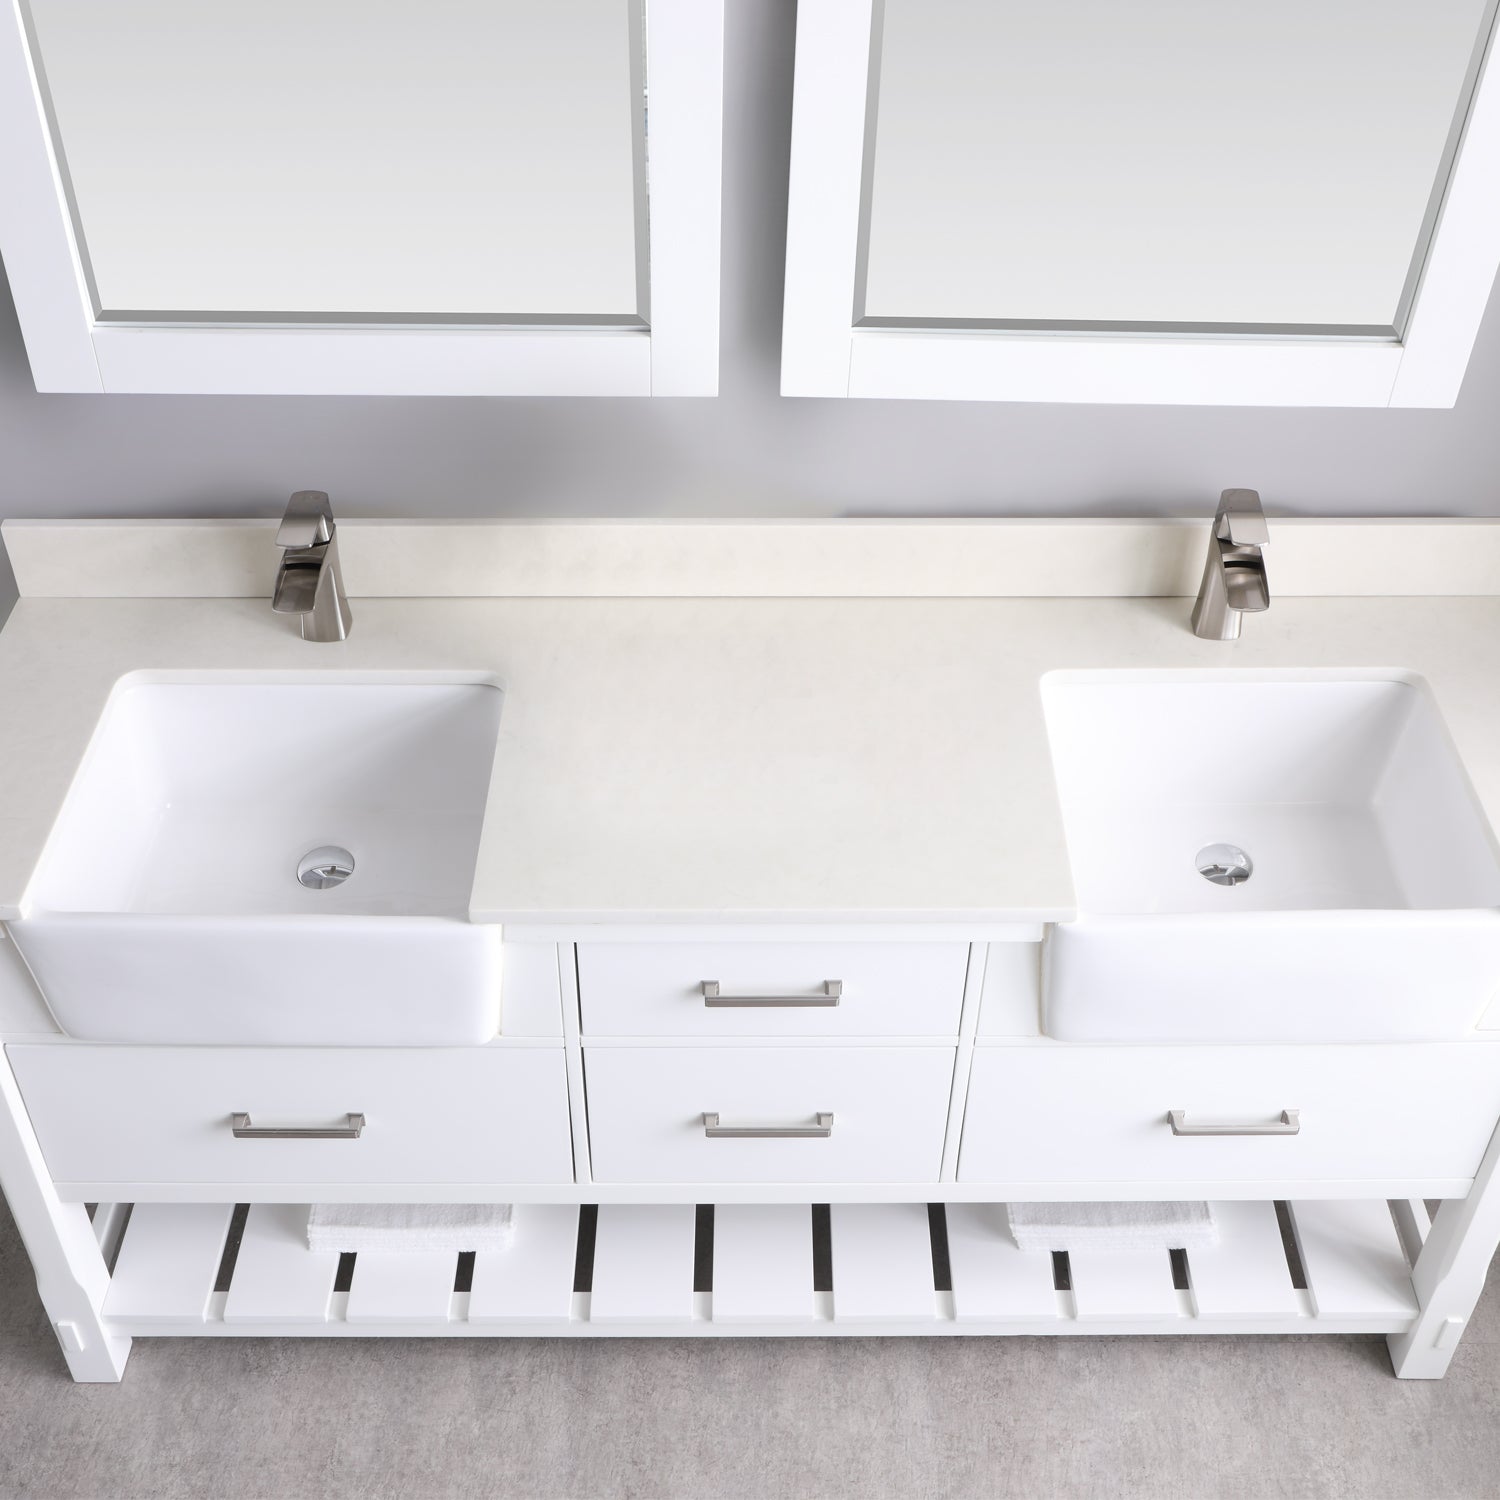 Georgia 72" Double Bathroom Vanity Set with White Farmhouse Basins